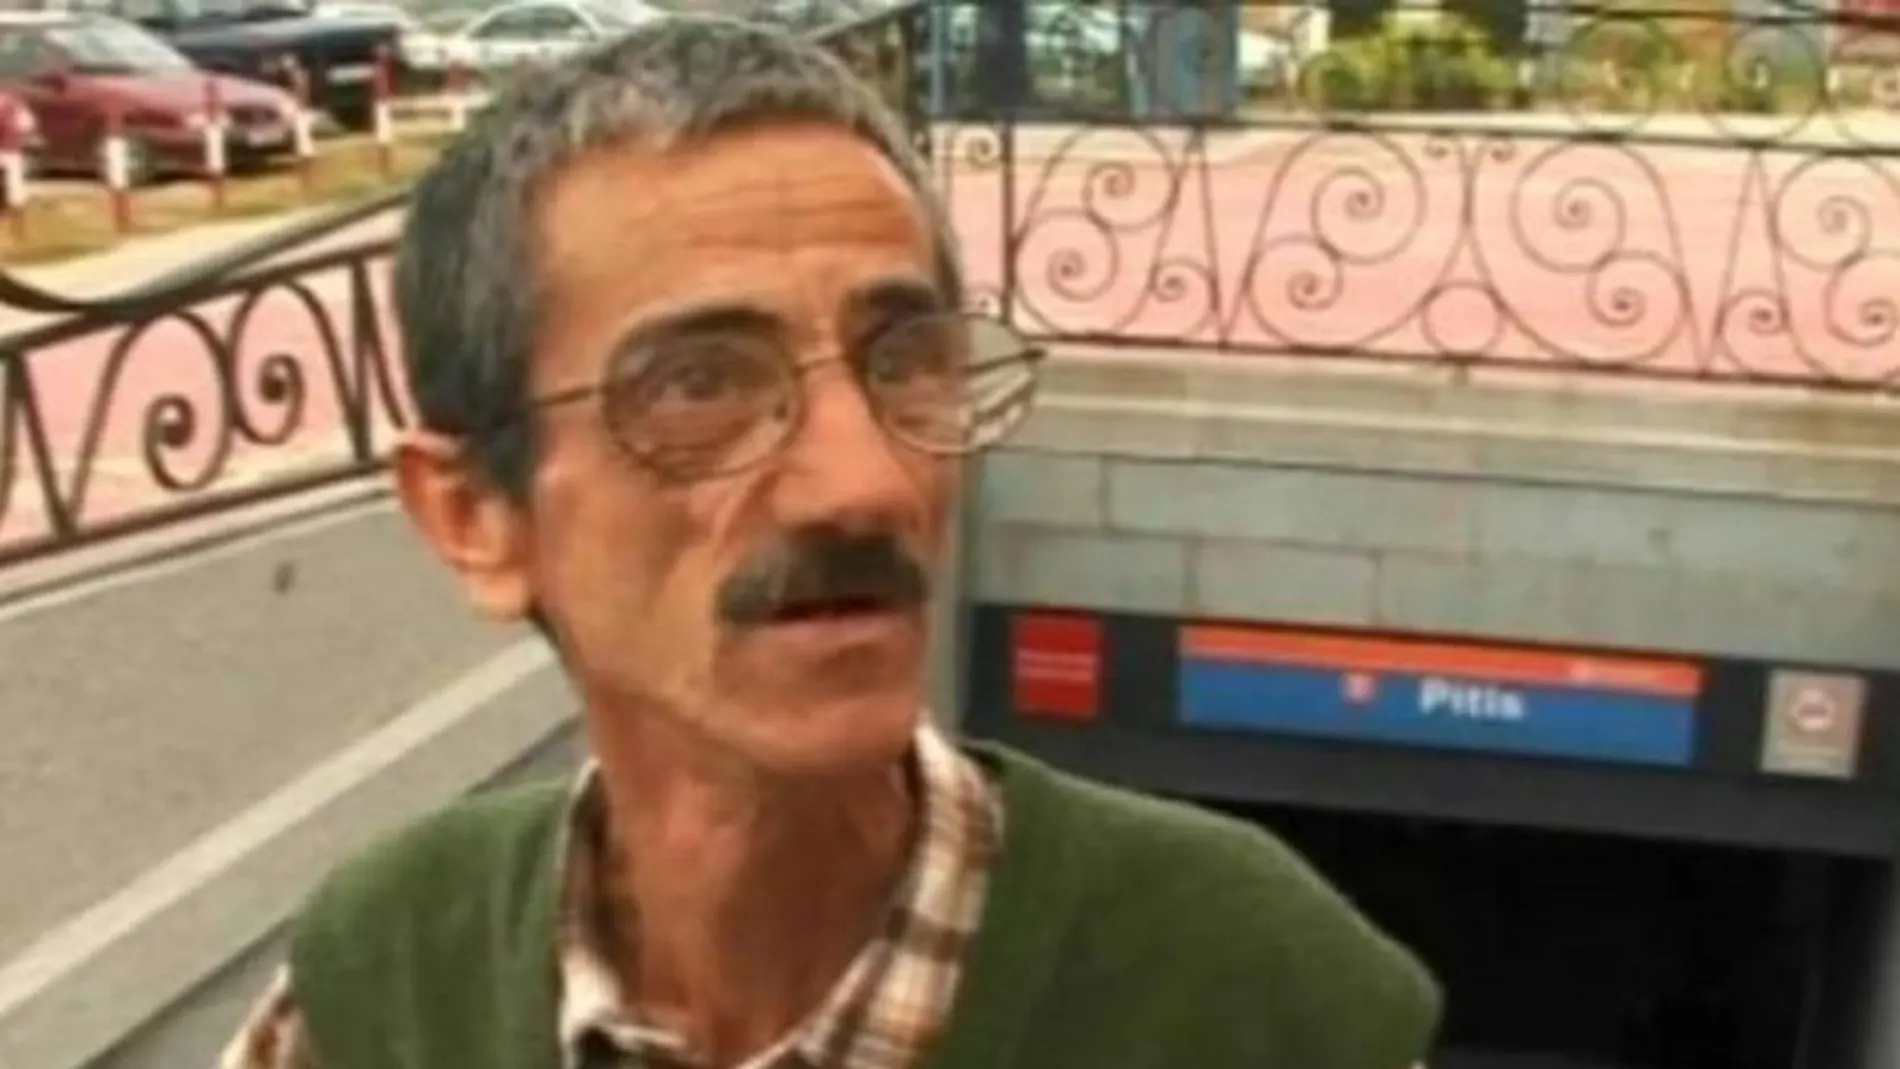 Ramón el vanidoso, saliendo de la boca del metro de Pitis, uno de los personajes que dio a conocer el programa